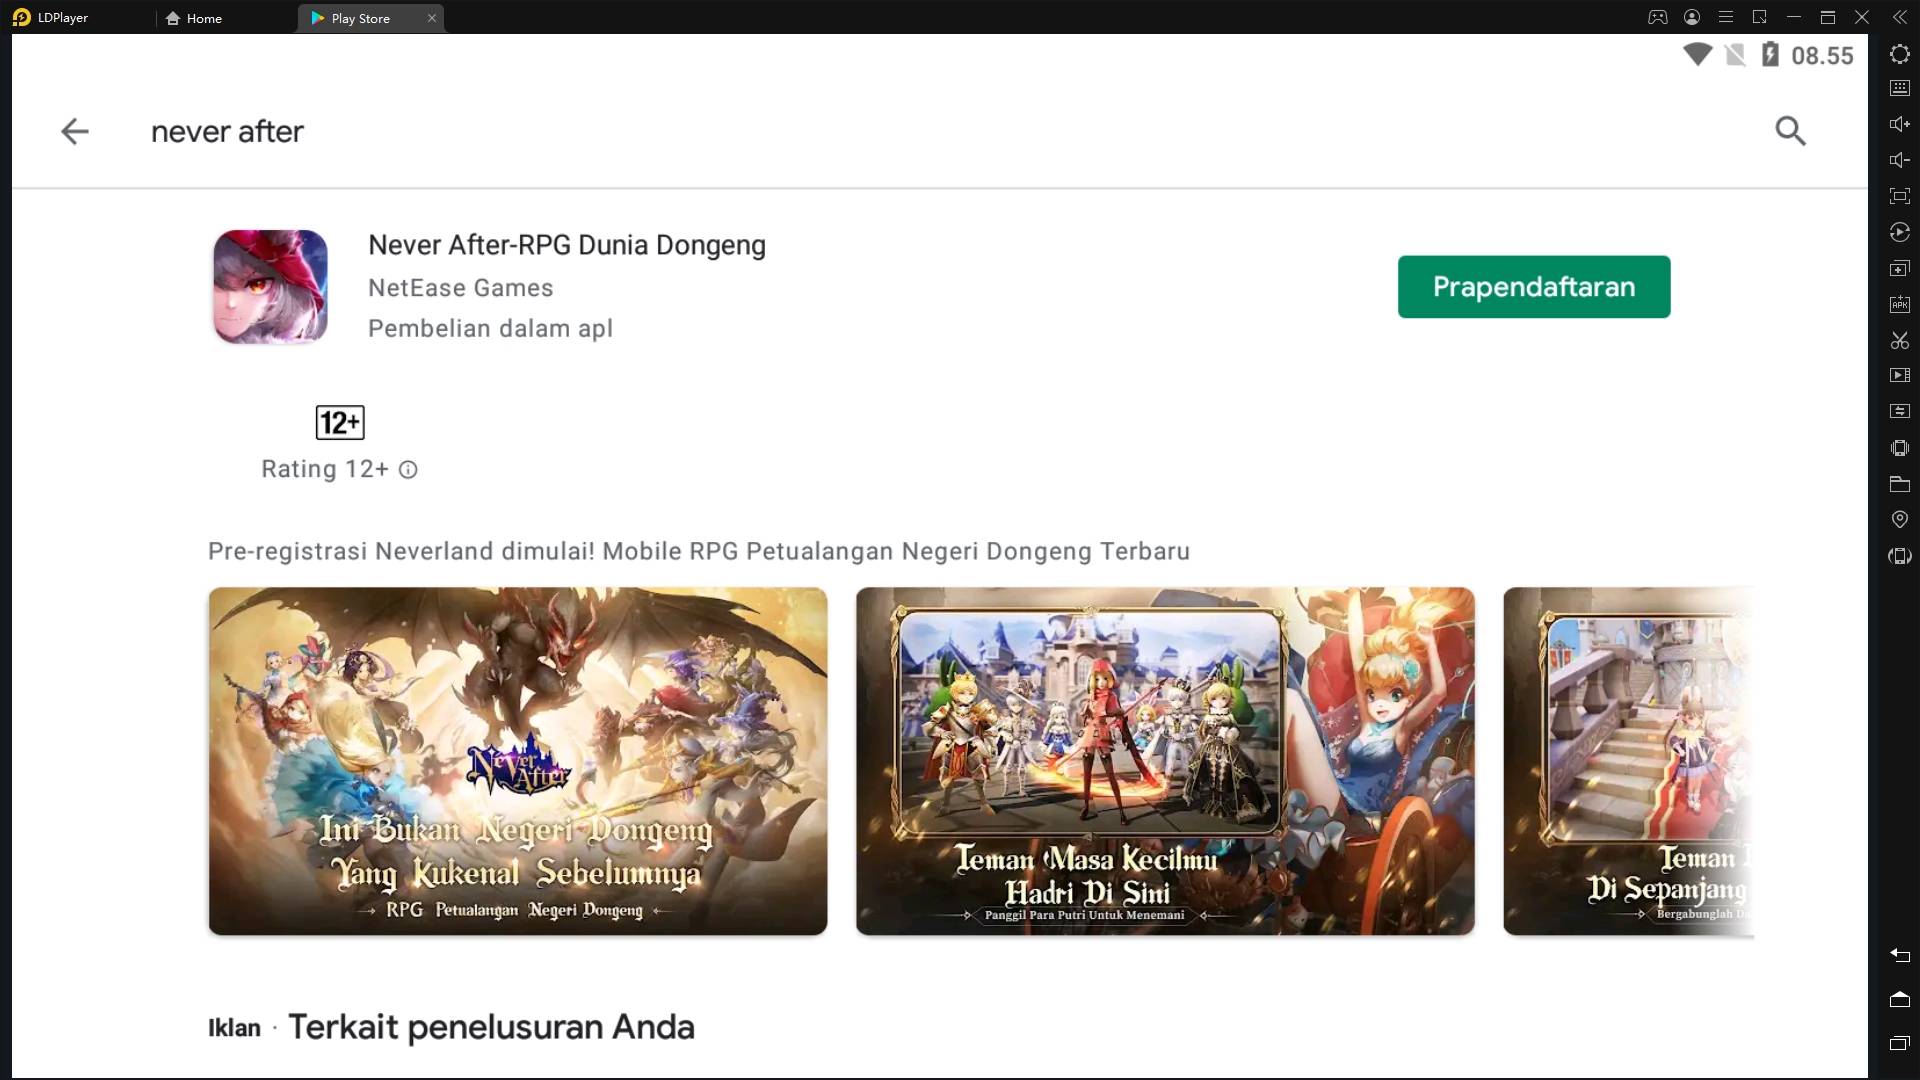 [Prapendaftaran] Never After: NetEase Akan Meriliskan Game MMORPG Terbaru! Banyak Hadiah Menunggu Kalian!